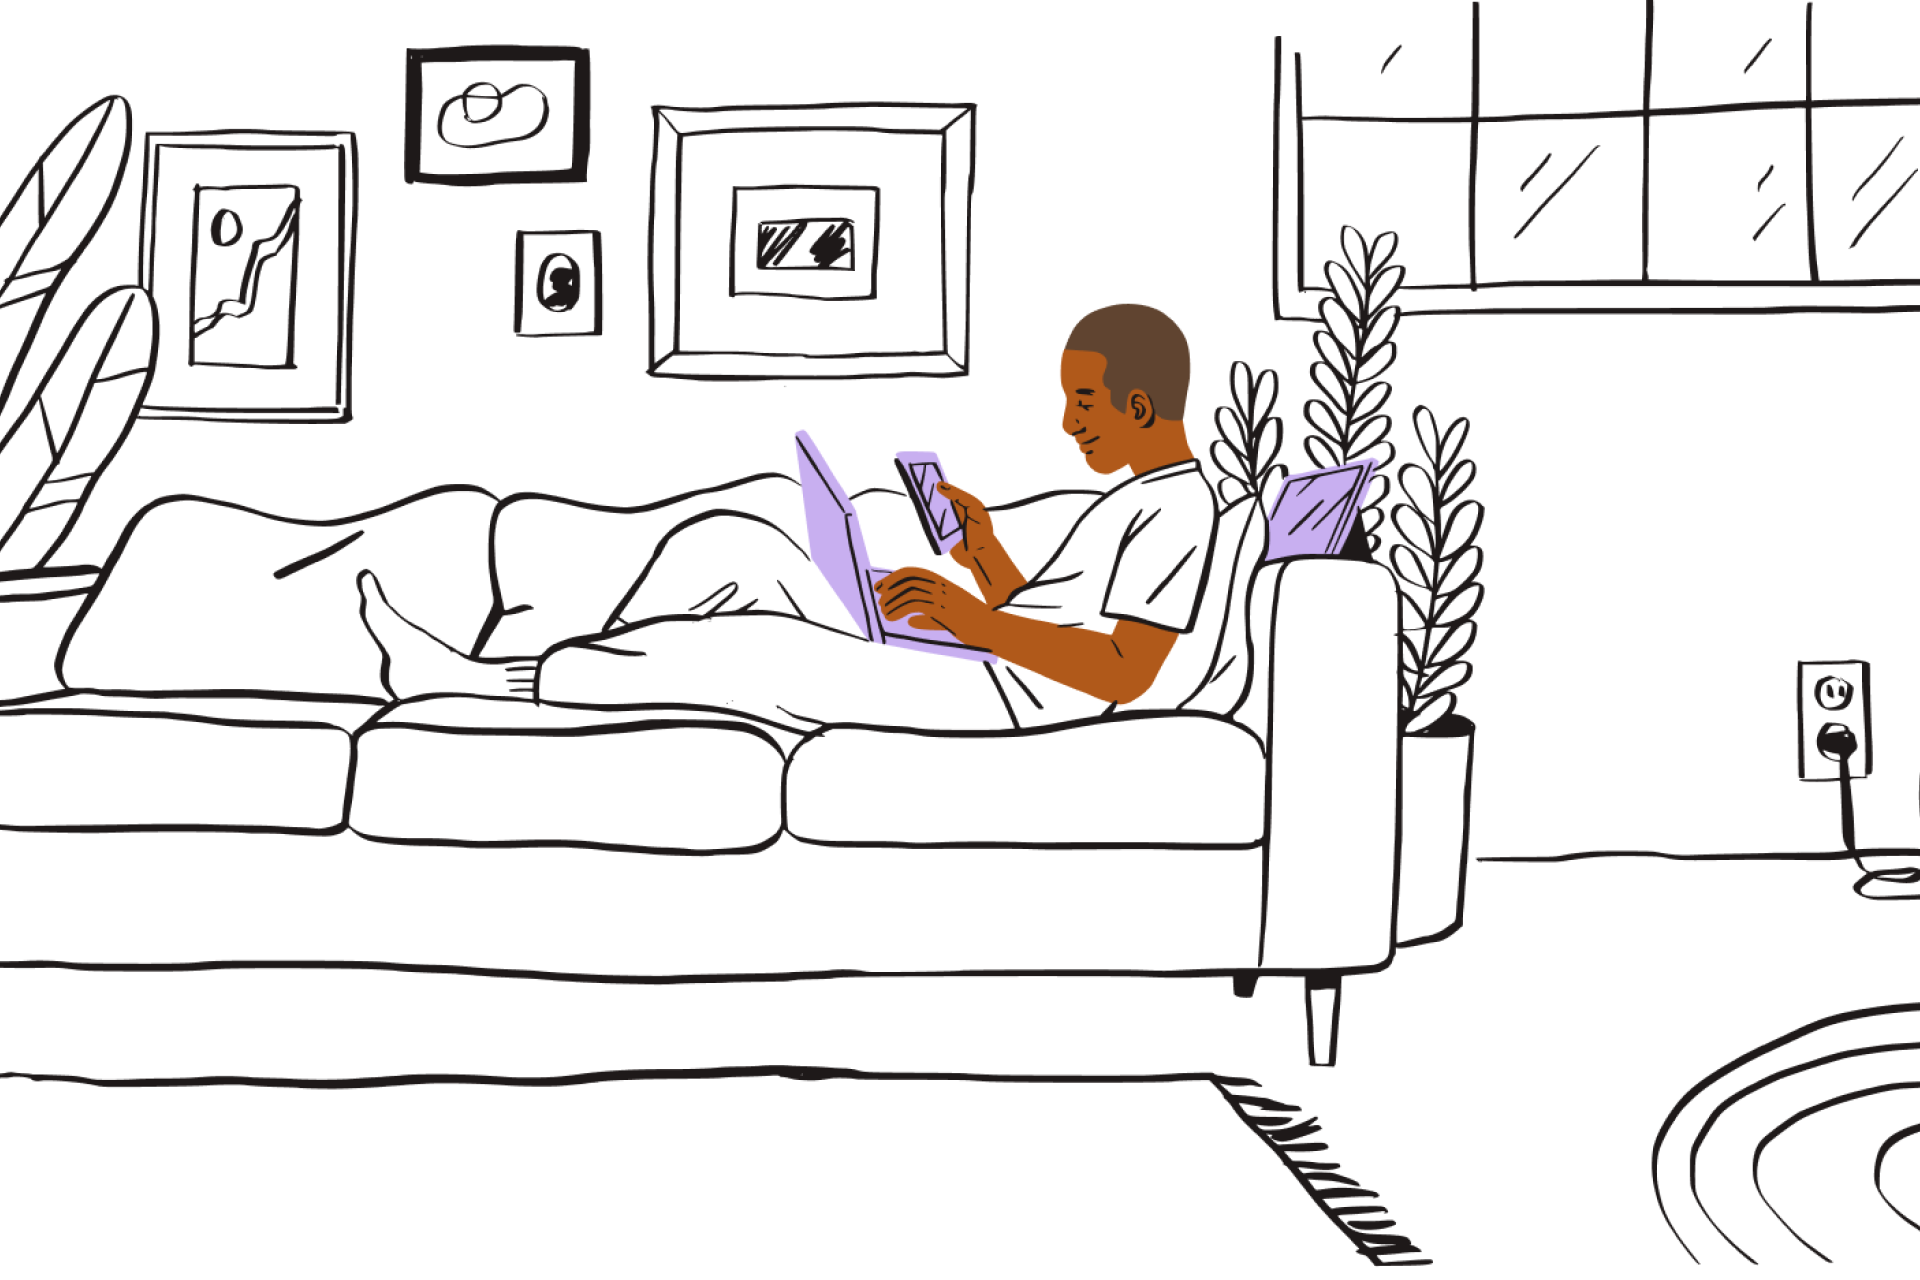 Seseorang sedang berehat di sofa, sambil melihat PDF pada komputer riba dan peranti mudah alihnya.